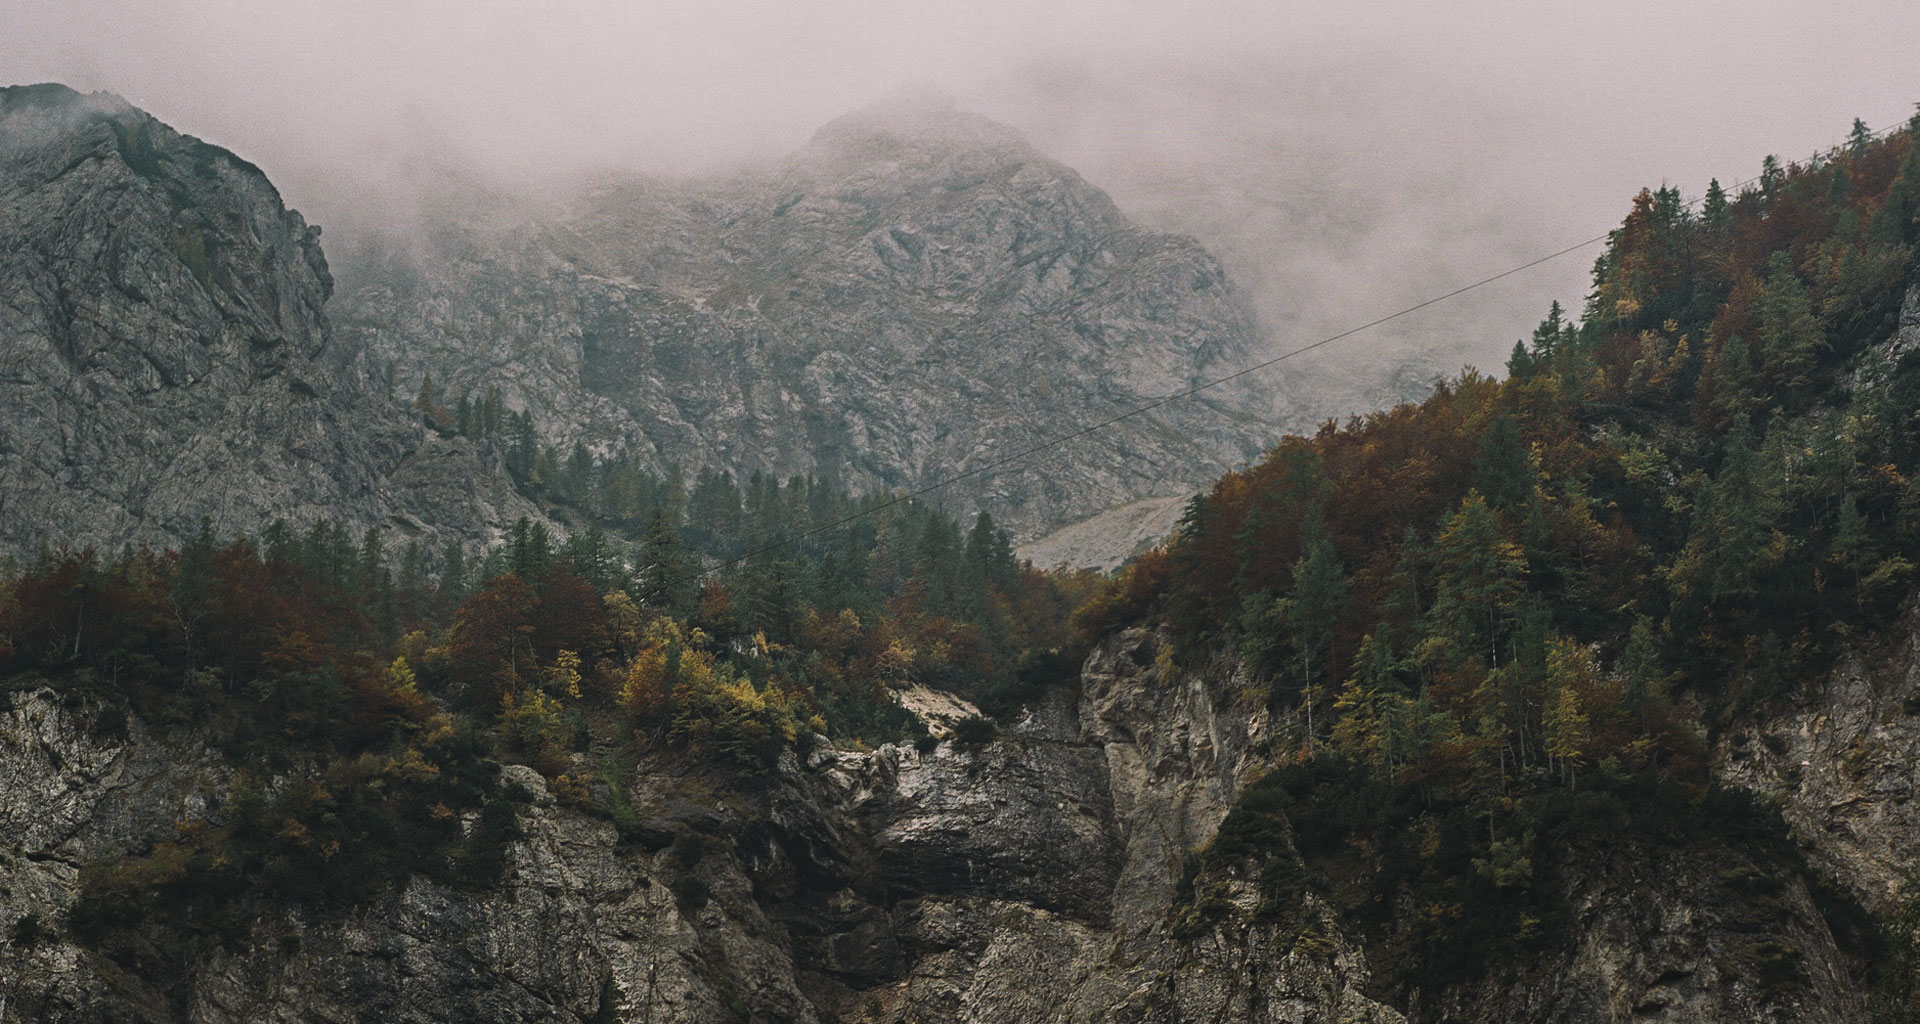 Slovenia’s alpine vistas are unmissable, even on misty autumn days